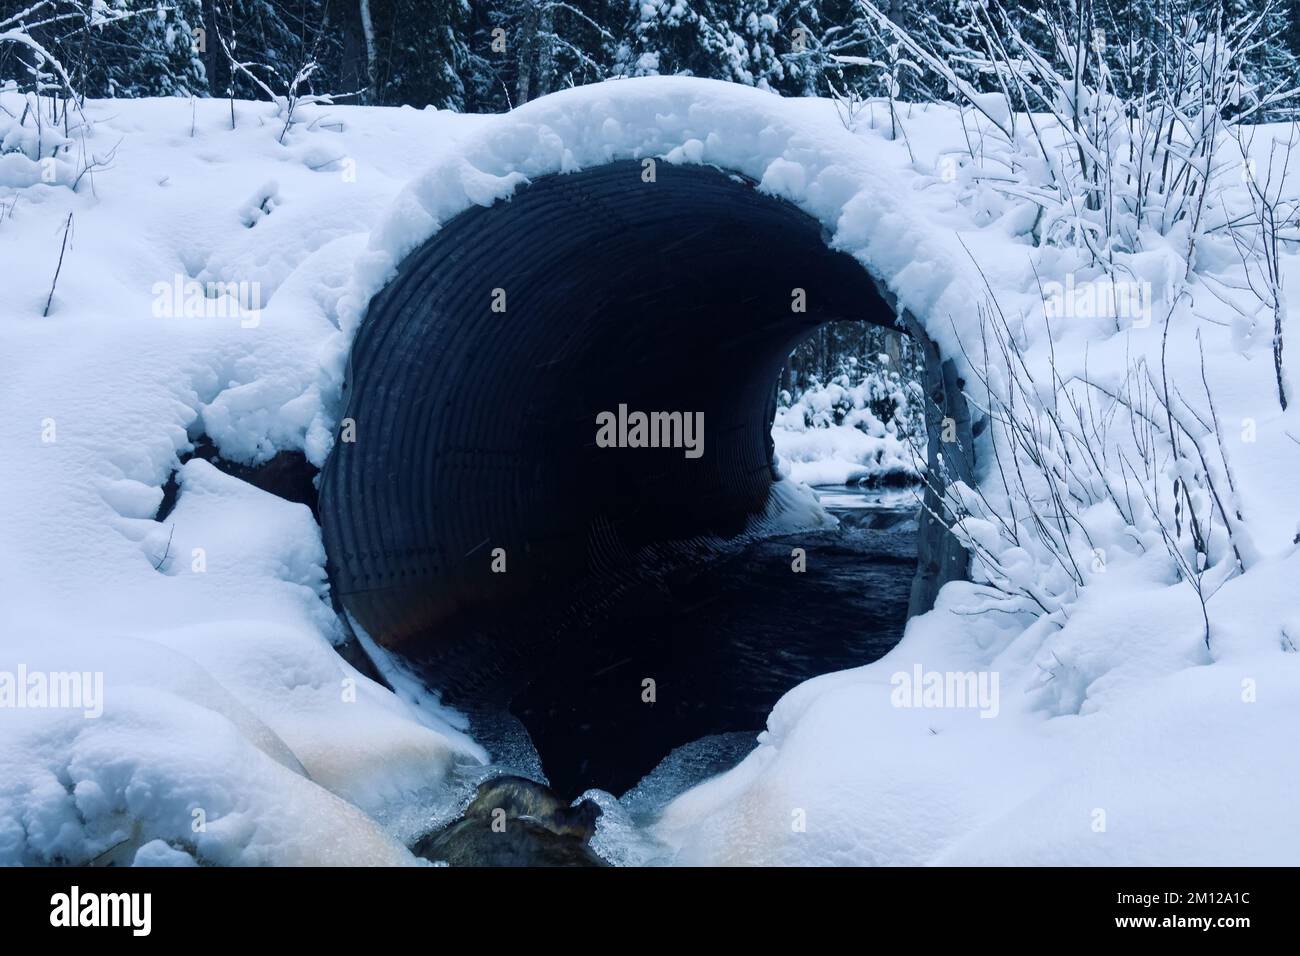 Le ponceau sous la route forestière est couvert de neige en hiver, mais le déversement d'eau se poursuit, ruisseau libre de glace Banque D'Images